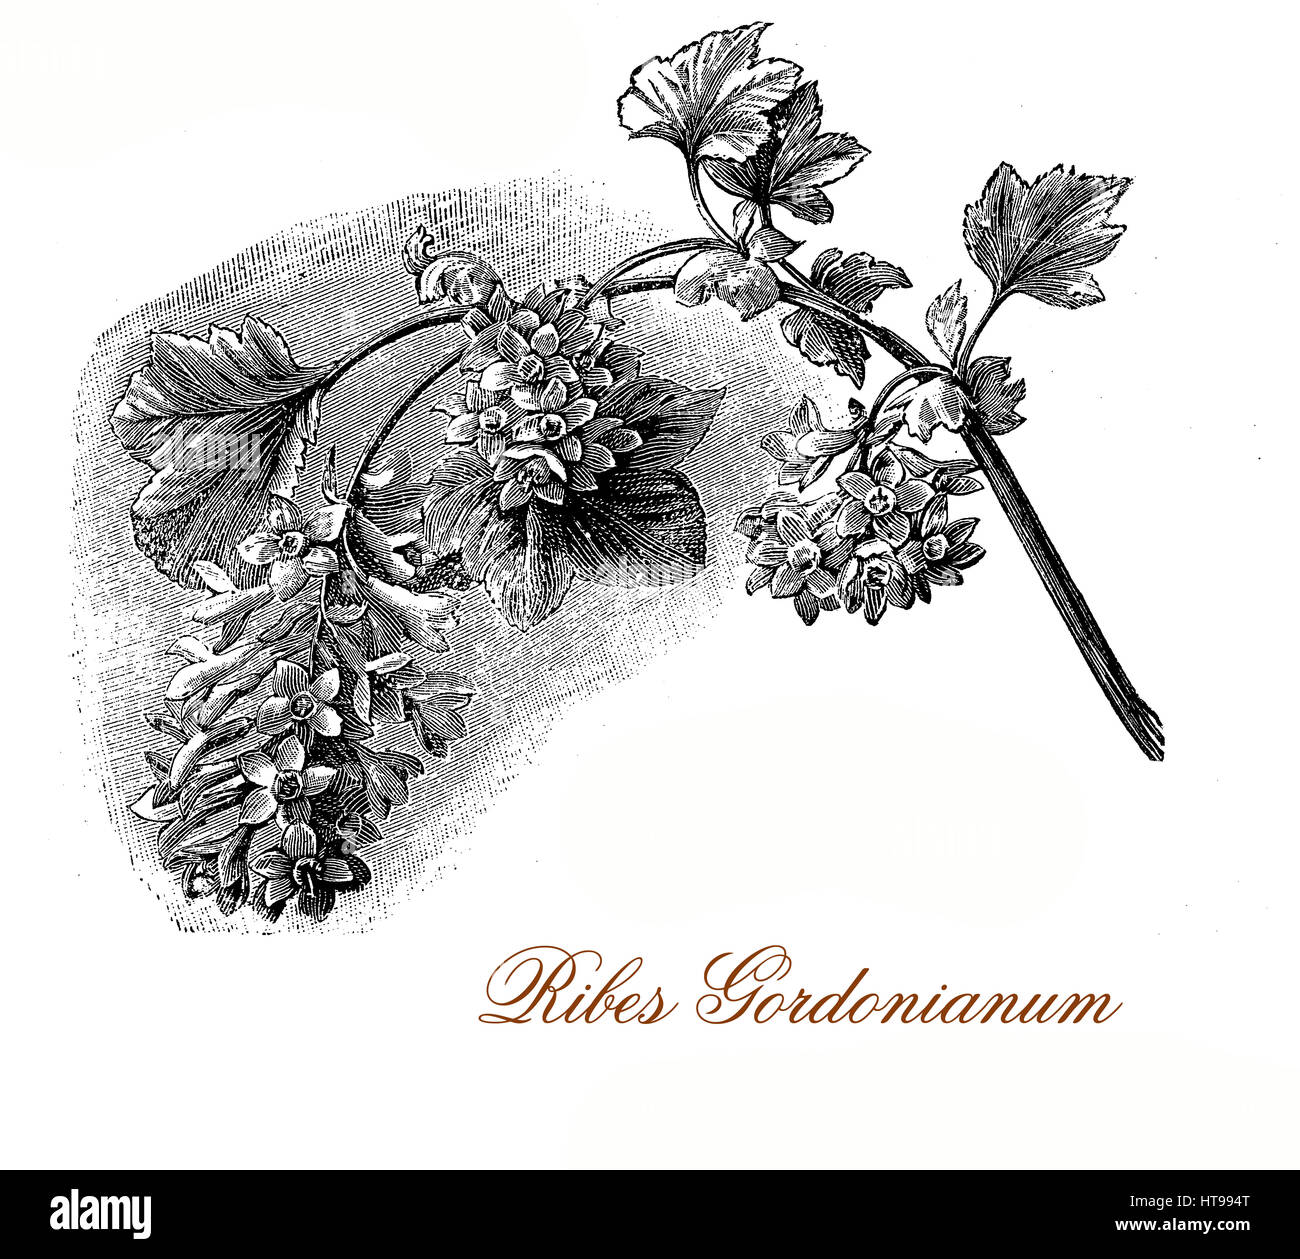 Vintage gravure de Ribes x gordonianum, groseillier à fleurs parfumées rouge cuivre avec des fleurs en grappes pendantes denses Banque D'Images